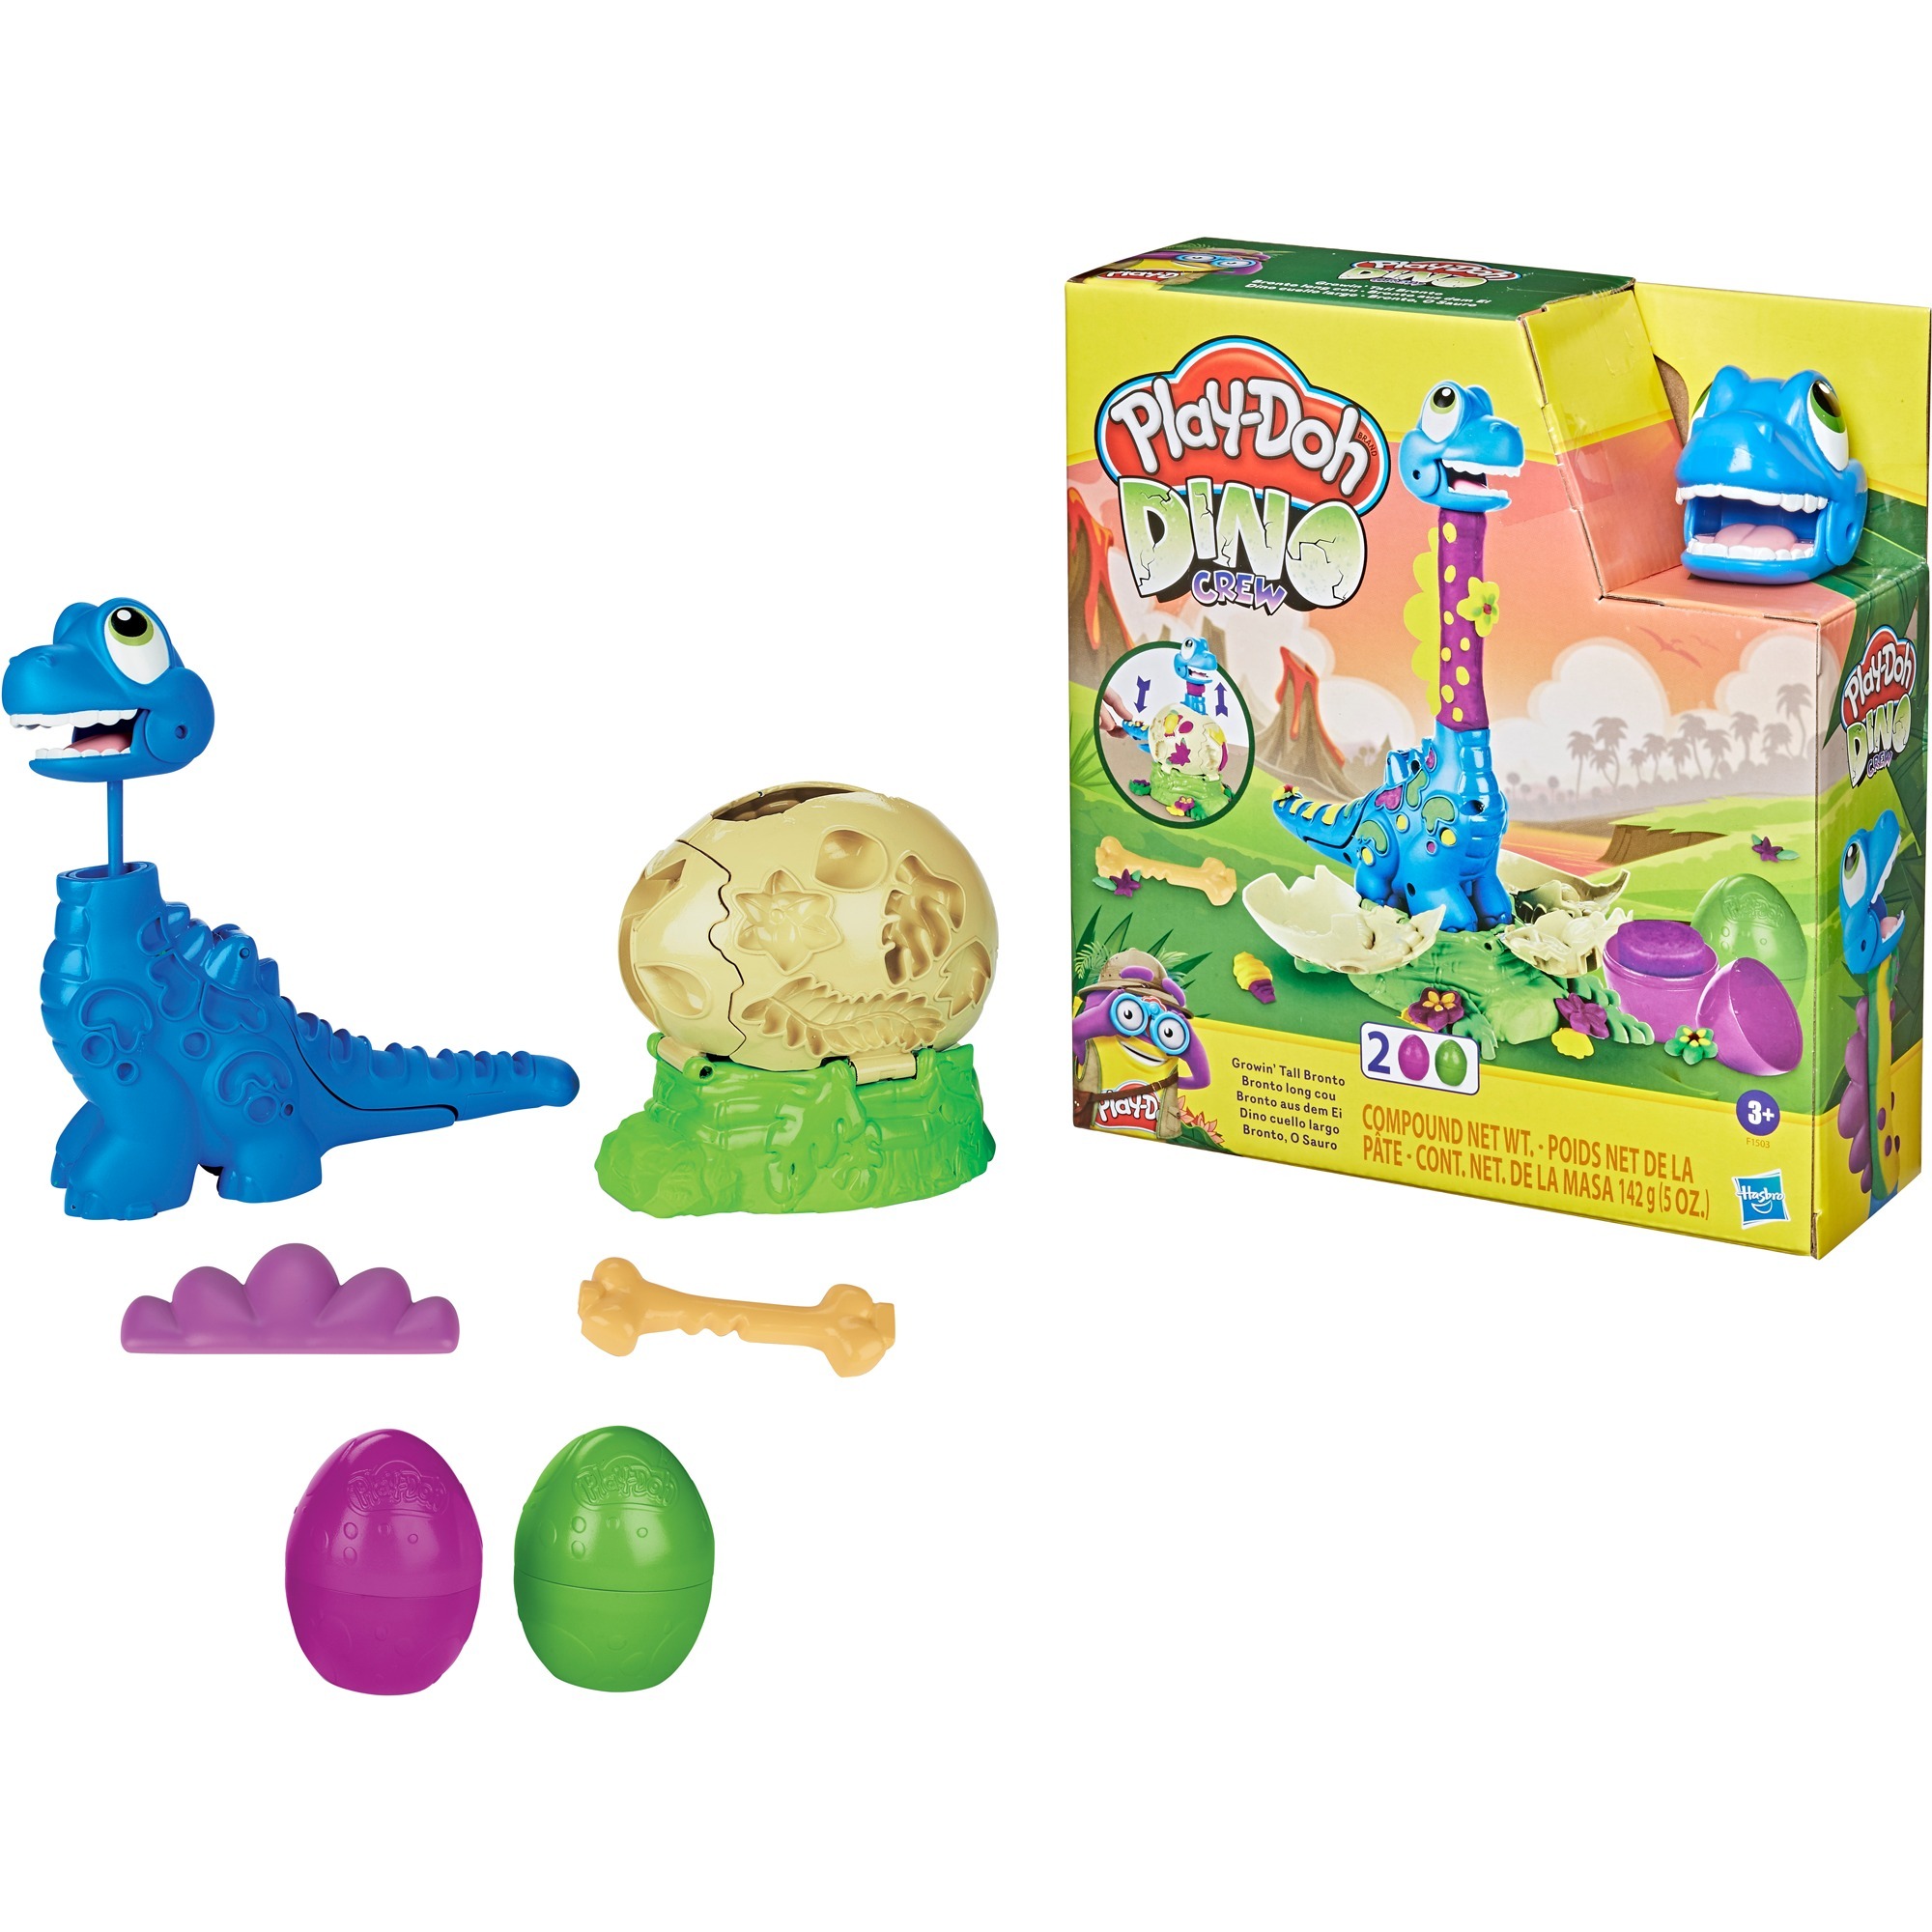 Image of Alternate - Play-Doh Dino Crew Bronto aus dem Ei, Kneten online einkaufen bei Alternate